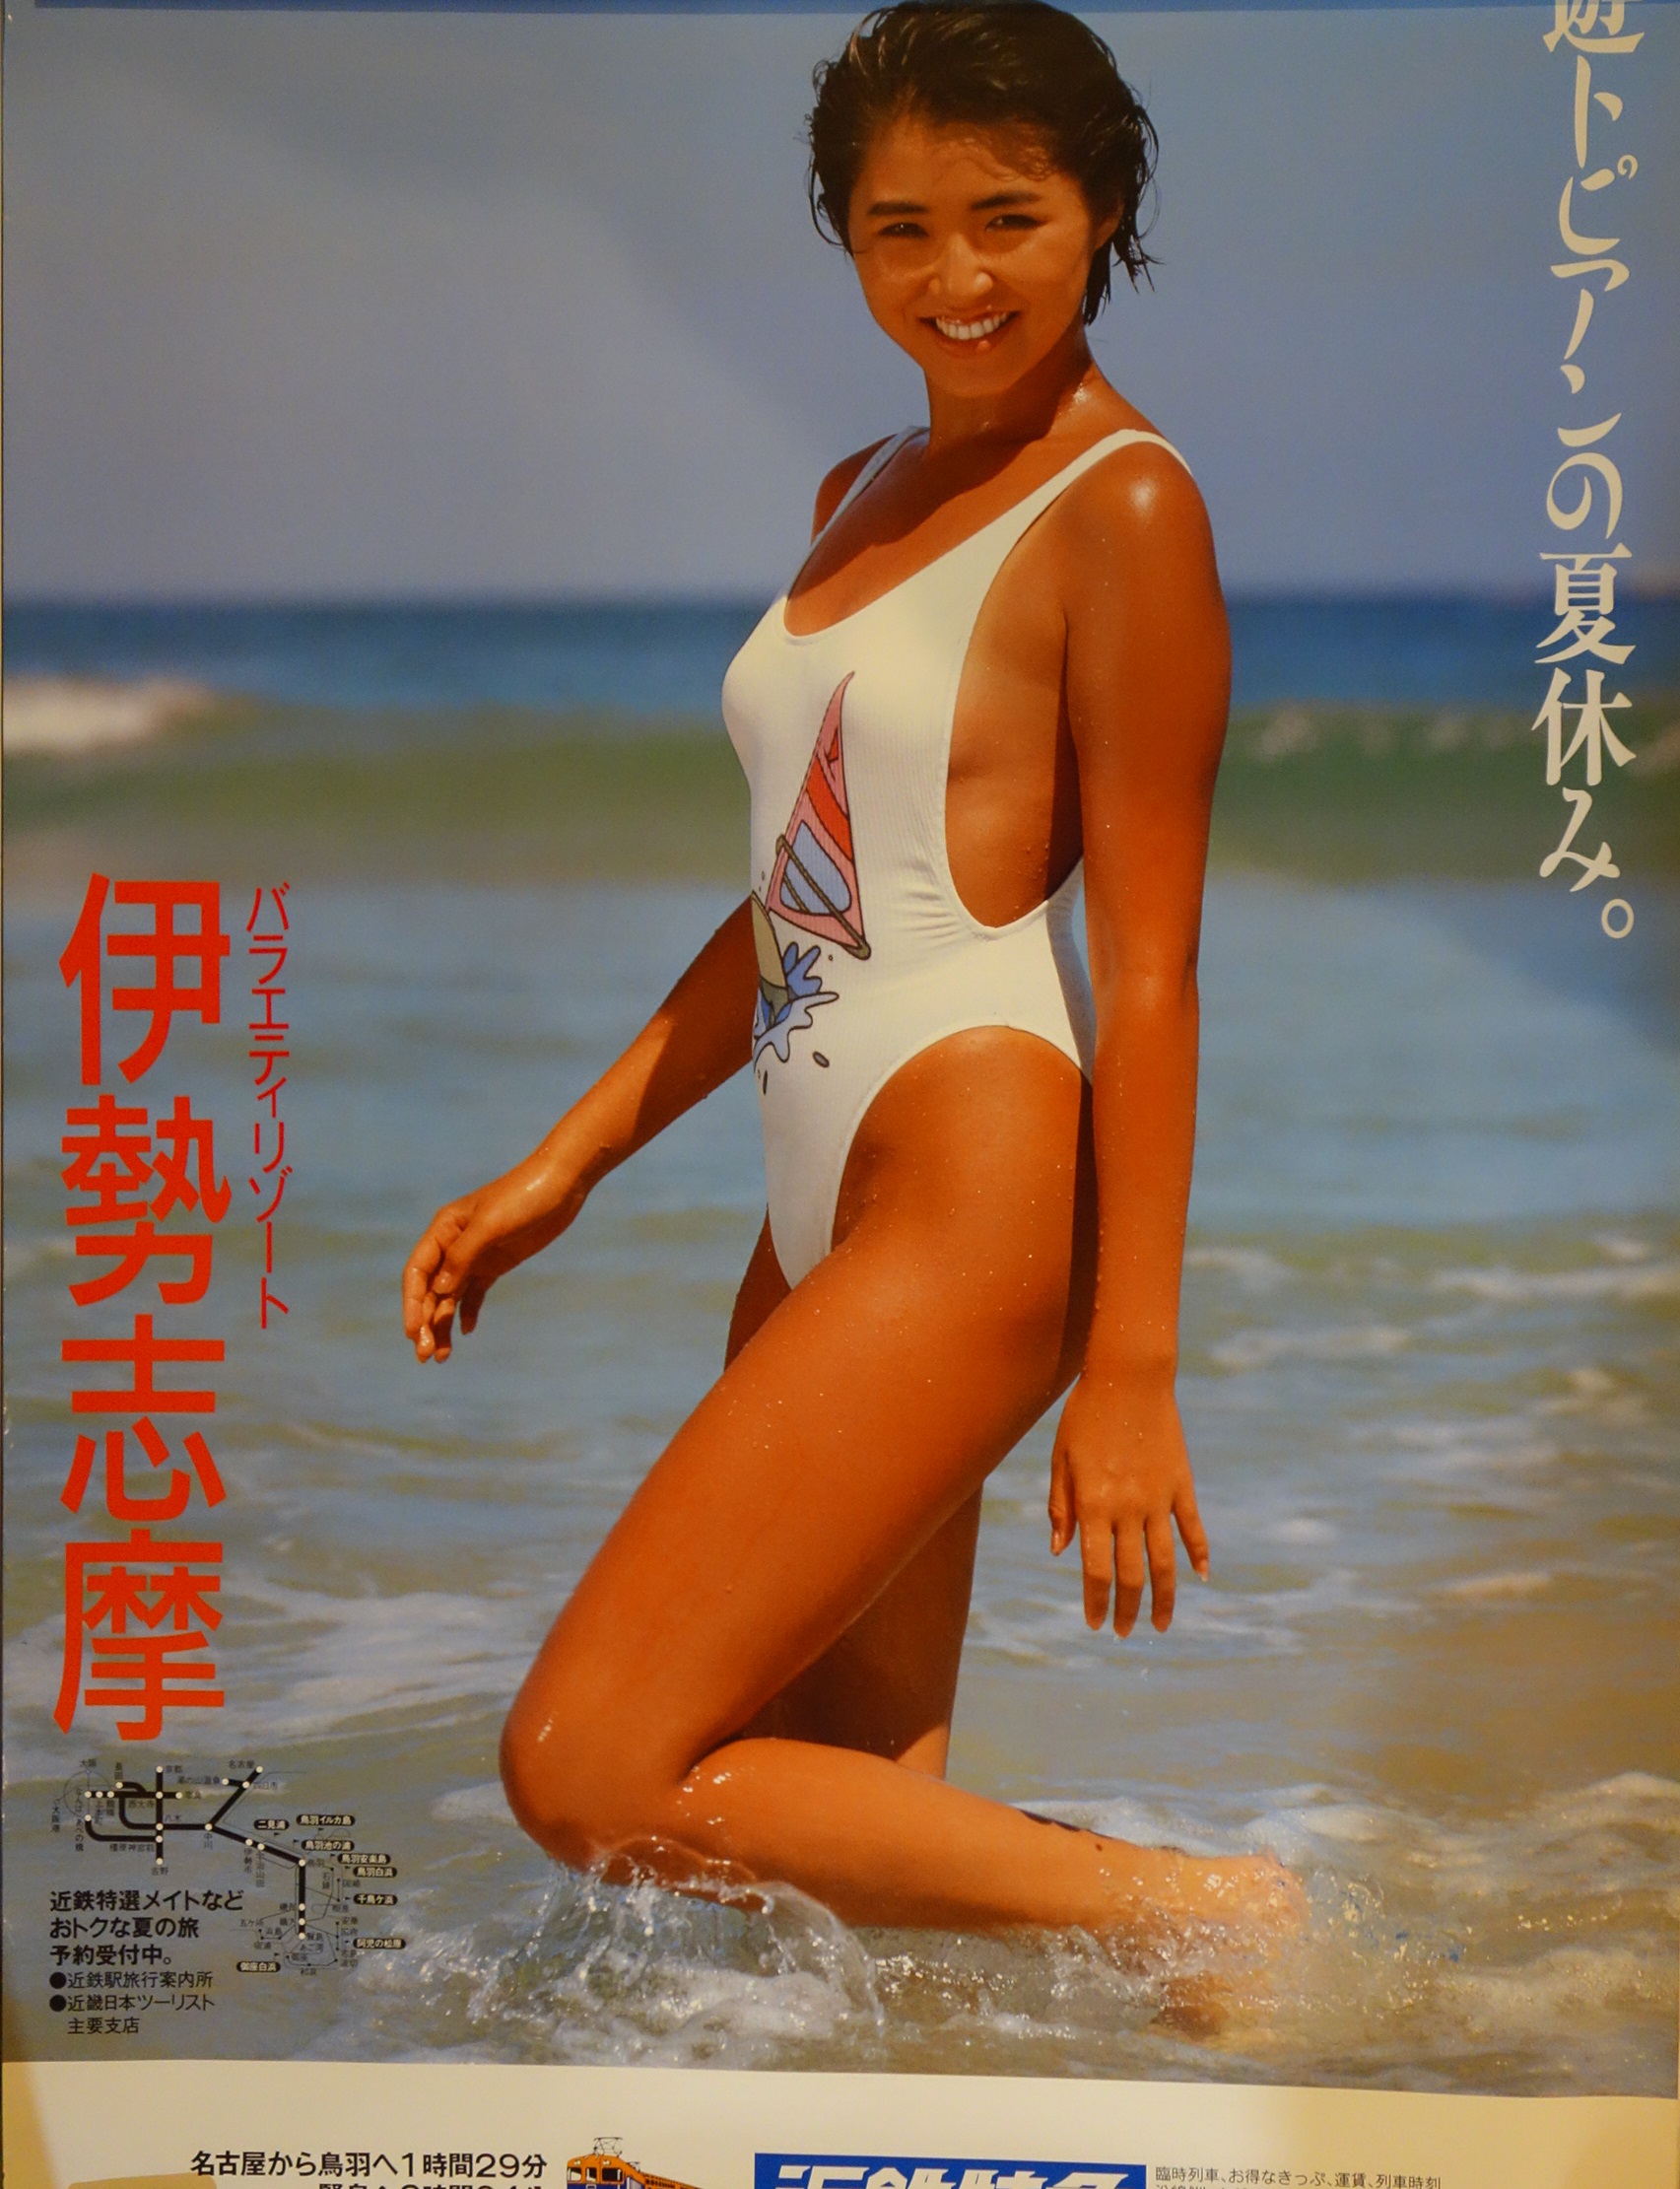 梶原真弓の水着ポスターを買取しました | 昭和アイドルコレクション 